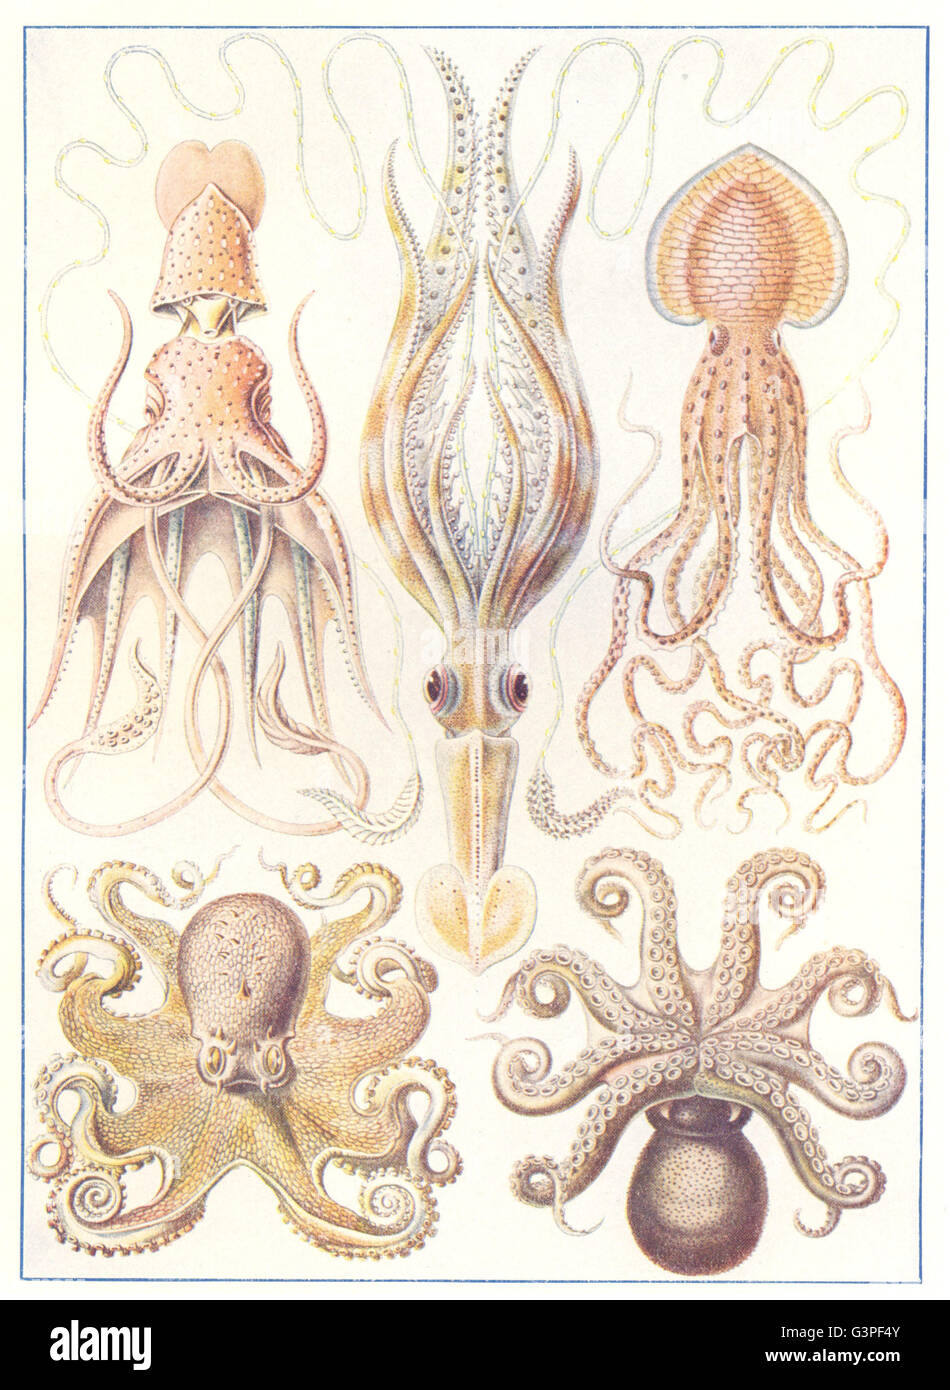 KREBSTIERE: Zehnfußkrebse und Oktopusse Krake Tintenfisch, antique print 1907 Stockfoto